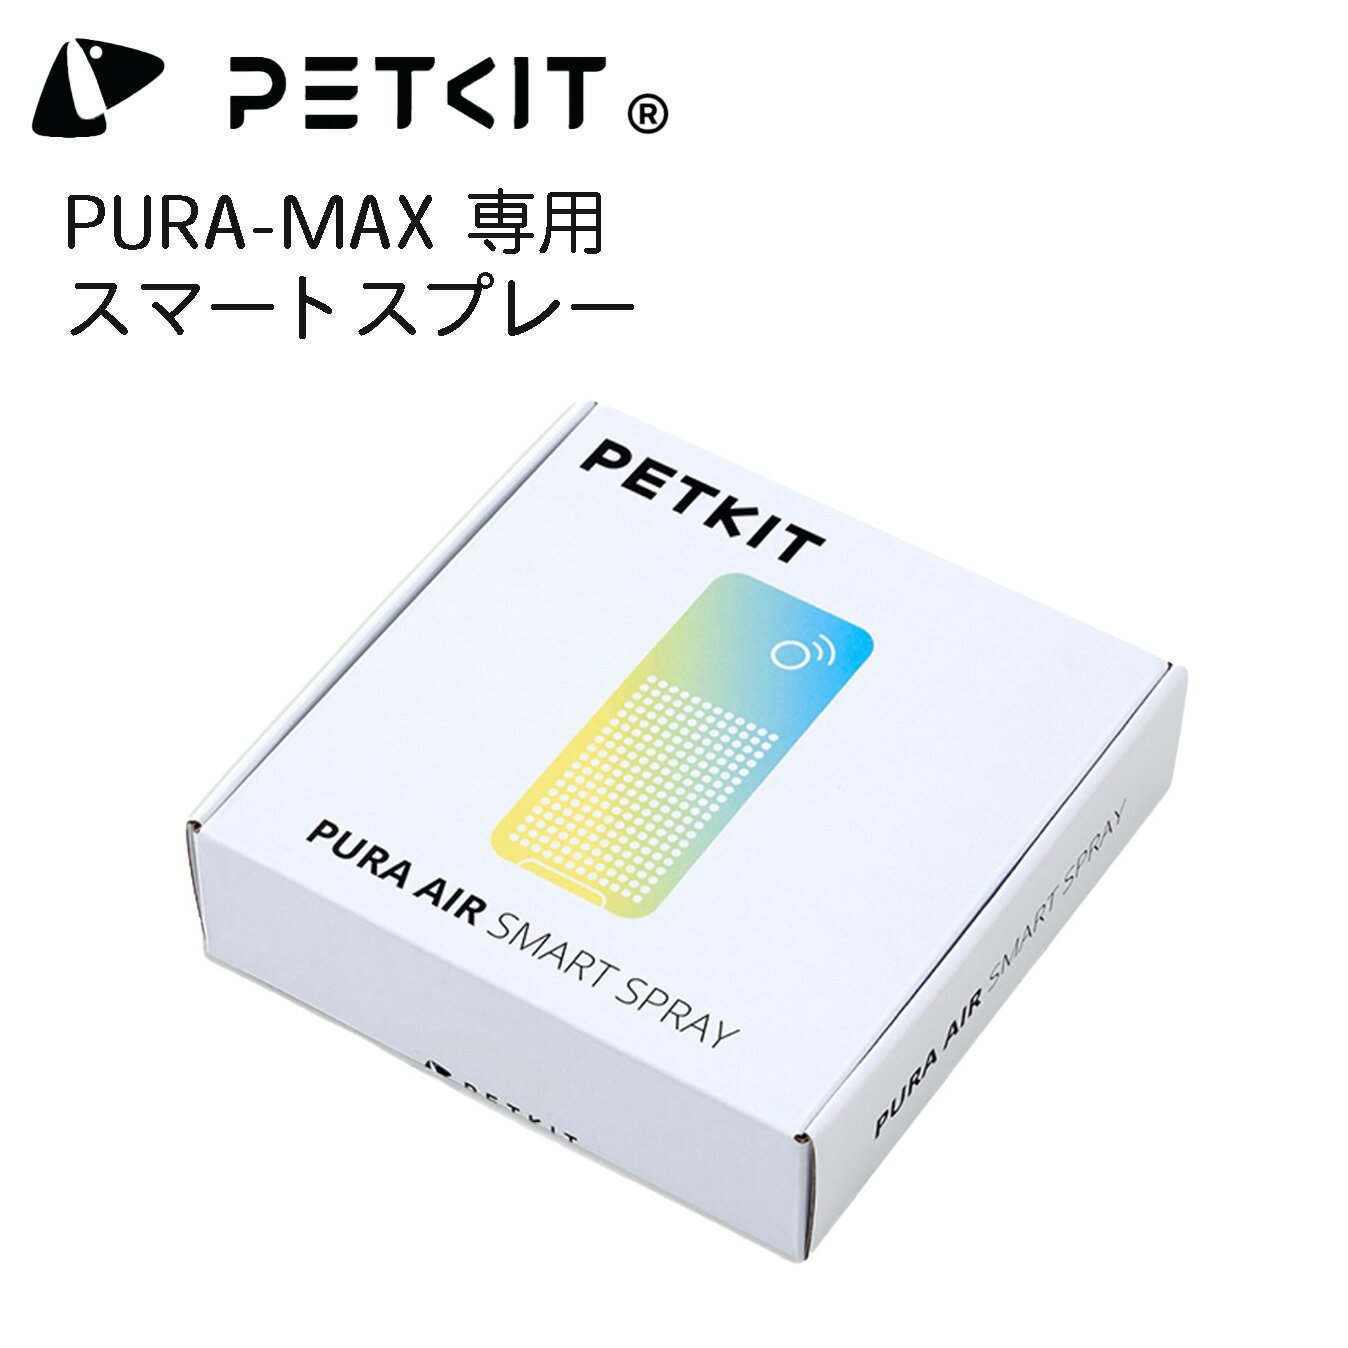 専用スマートスプレー 消臭スプレー 強力消臭 殺菌 除菌 PETKIT-PURA-MAX自動トイレ専用　ペットキット